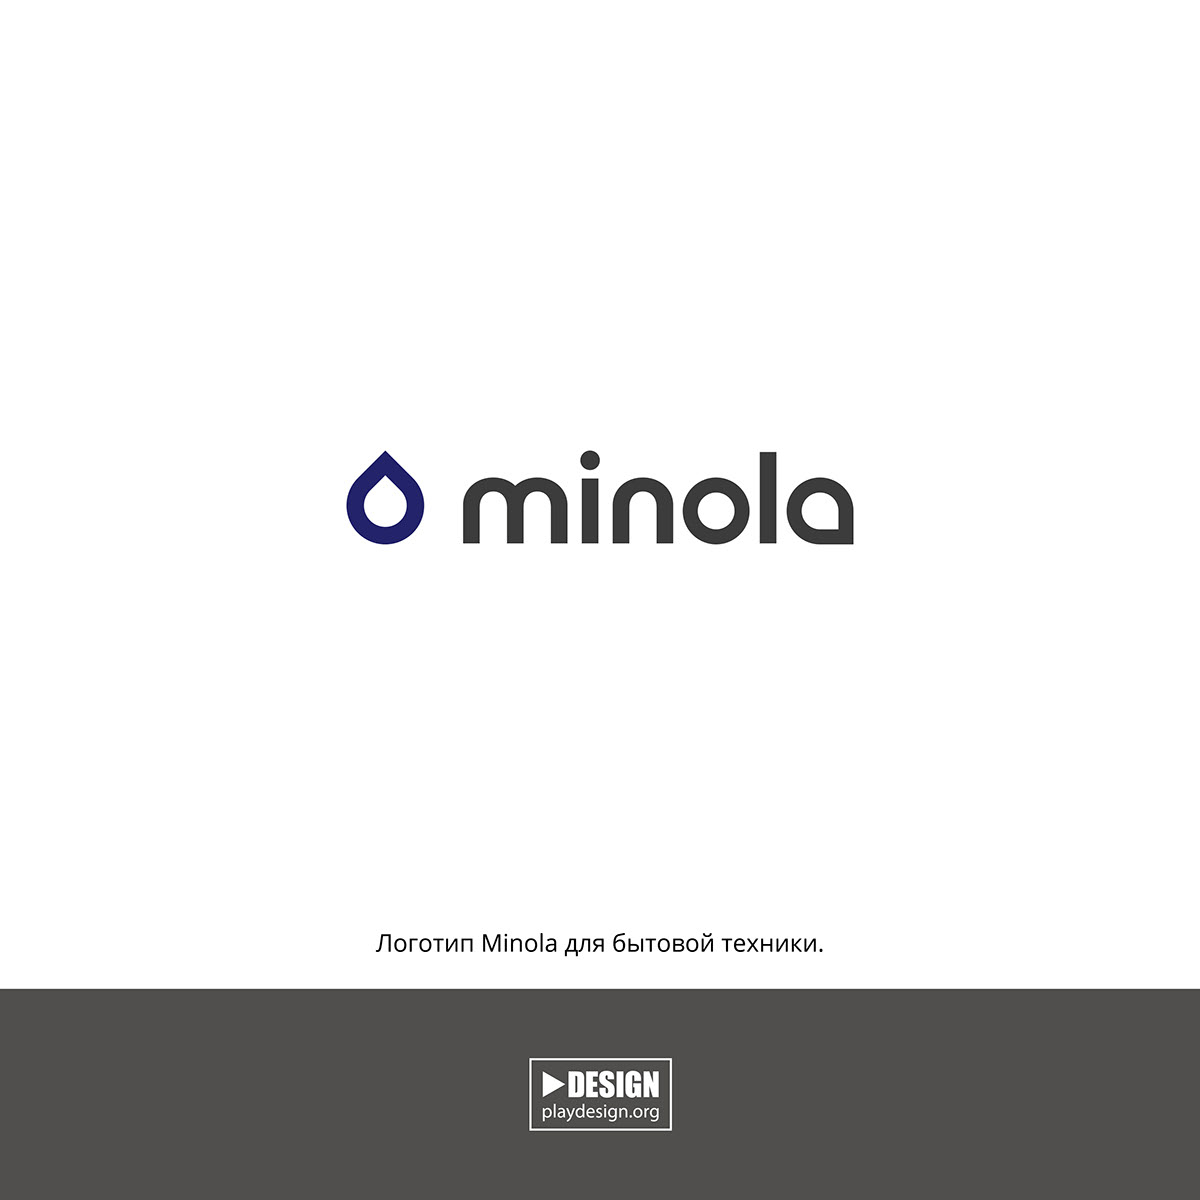 Логотип Минола логотип minola Minola logo заказать логотип создание логотипа паттерн фирменный паттерн Minola для бытовой техники. Логотип Минола для бытовой техники. playdesign плэйдизайн